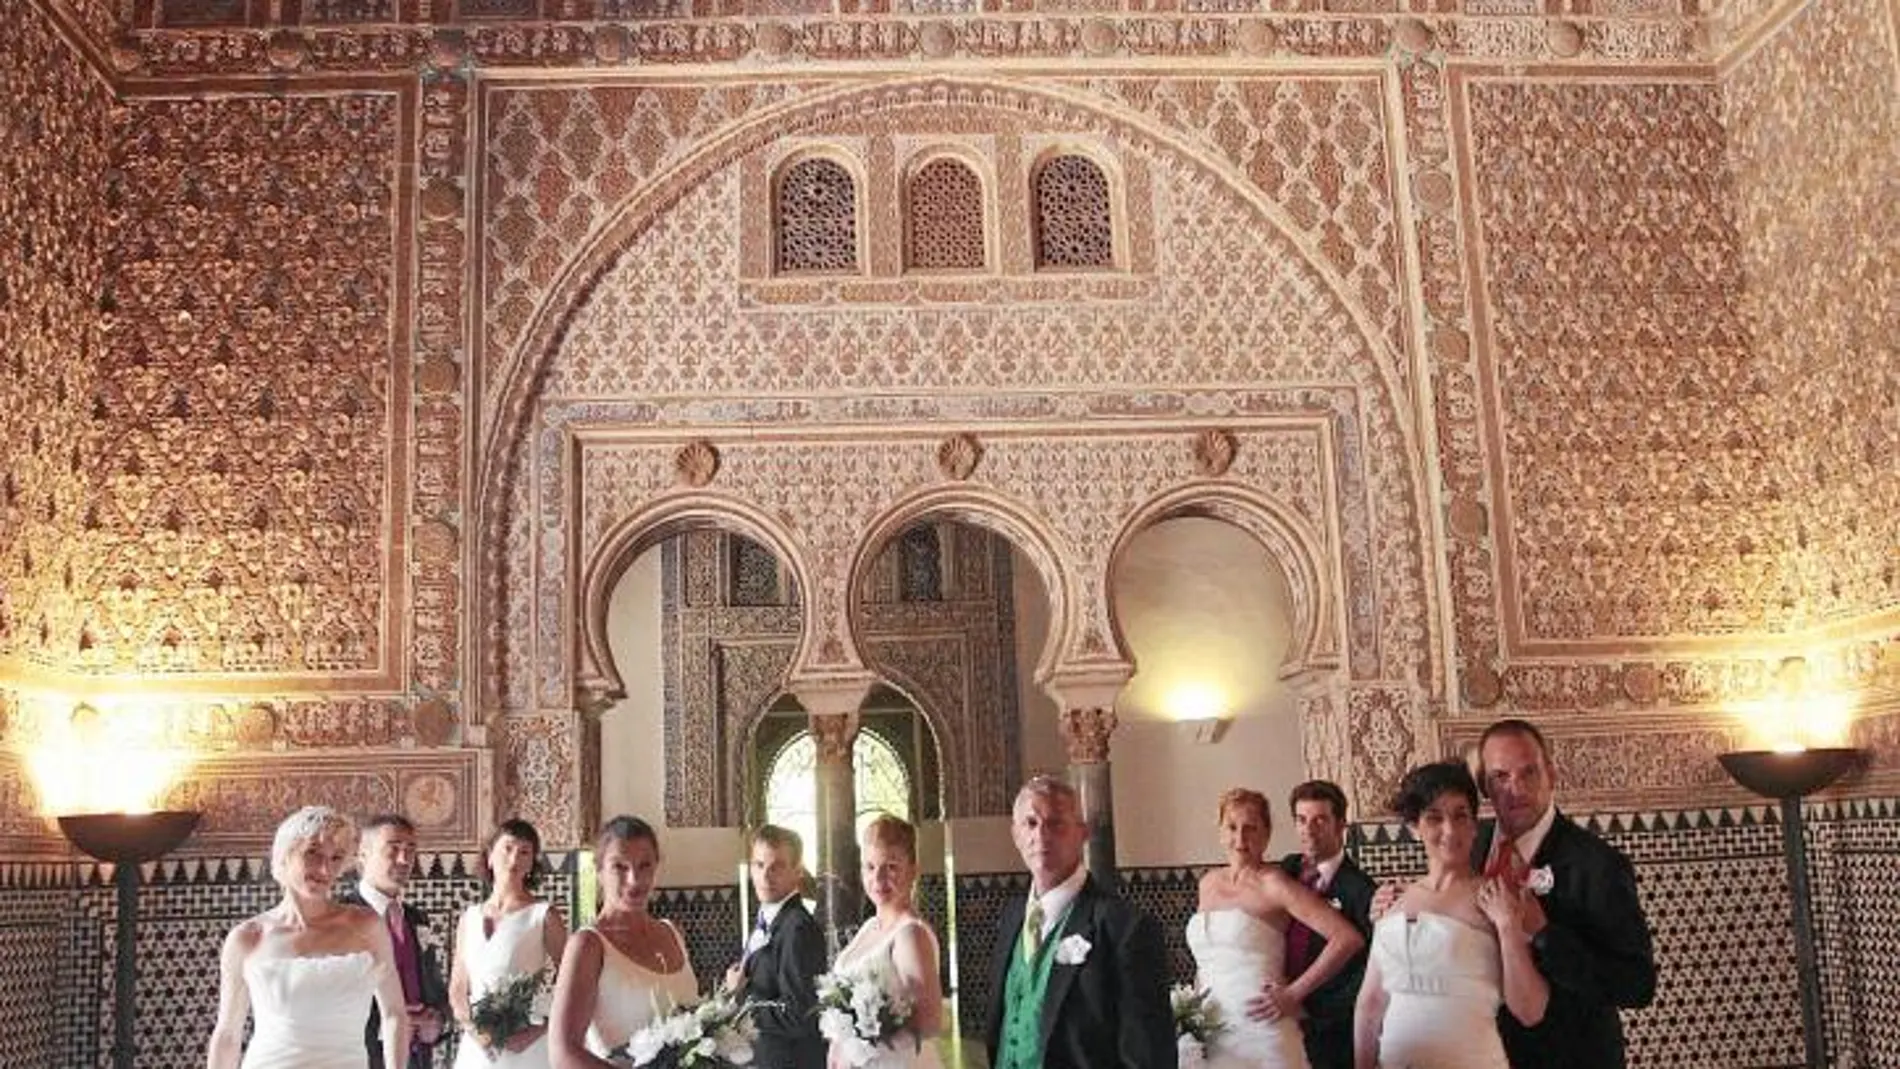 Los integrantes de la compañía, en uno de los salones del Real Alcázar de Sevilla